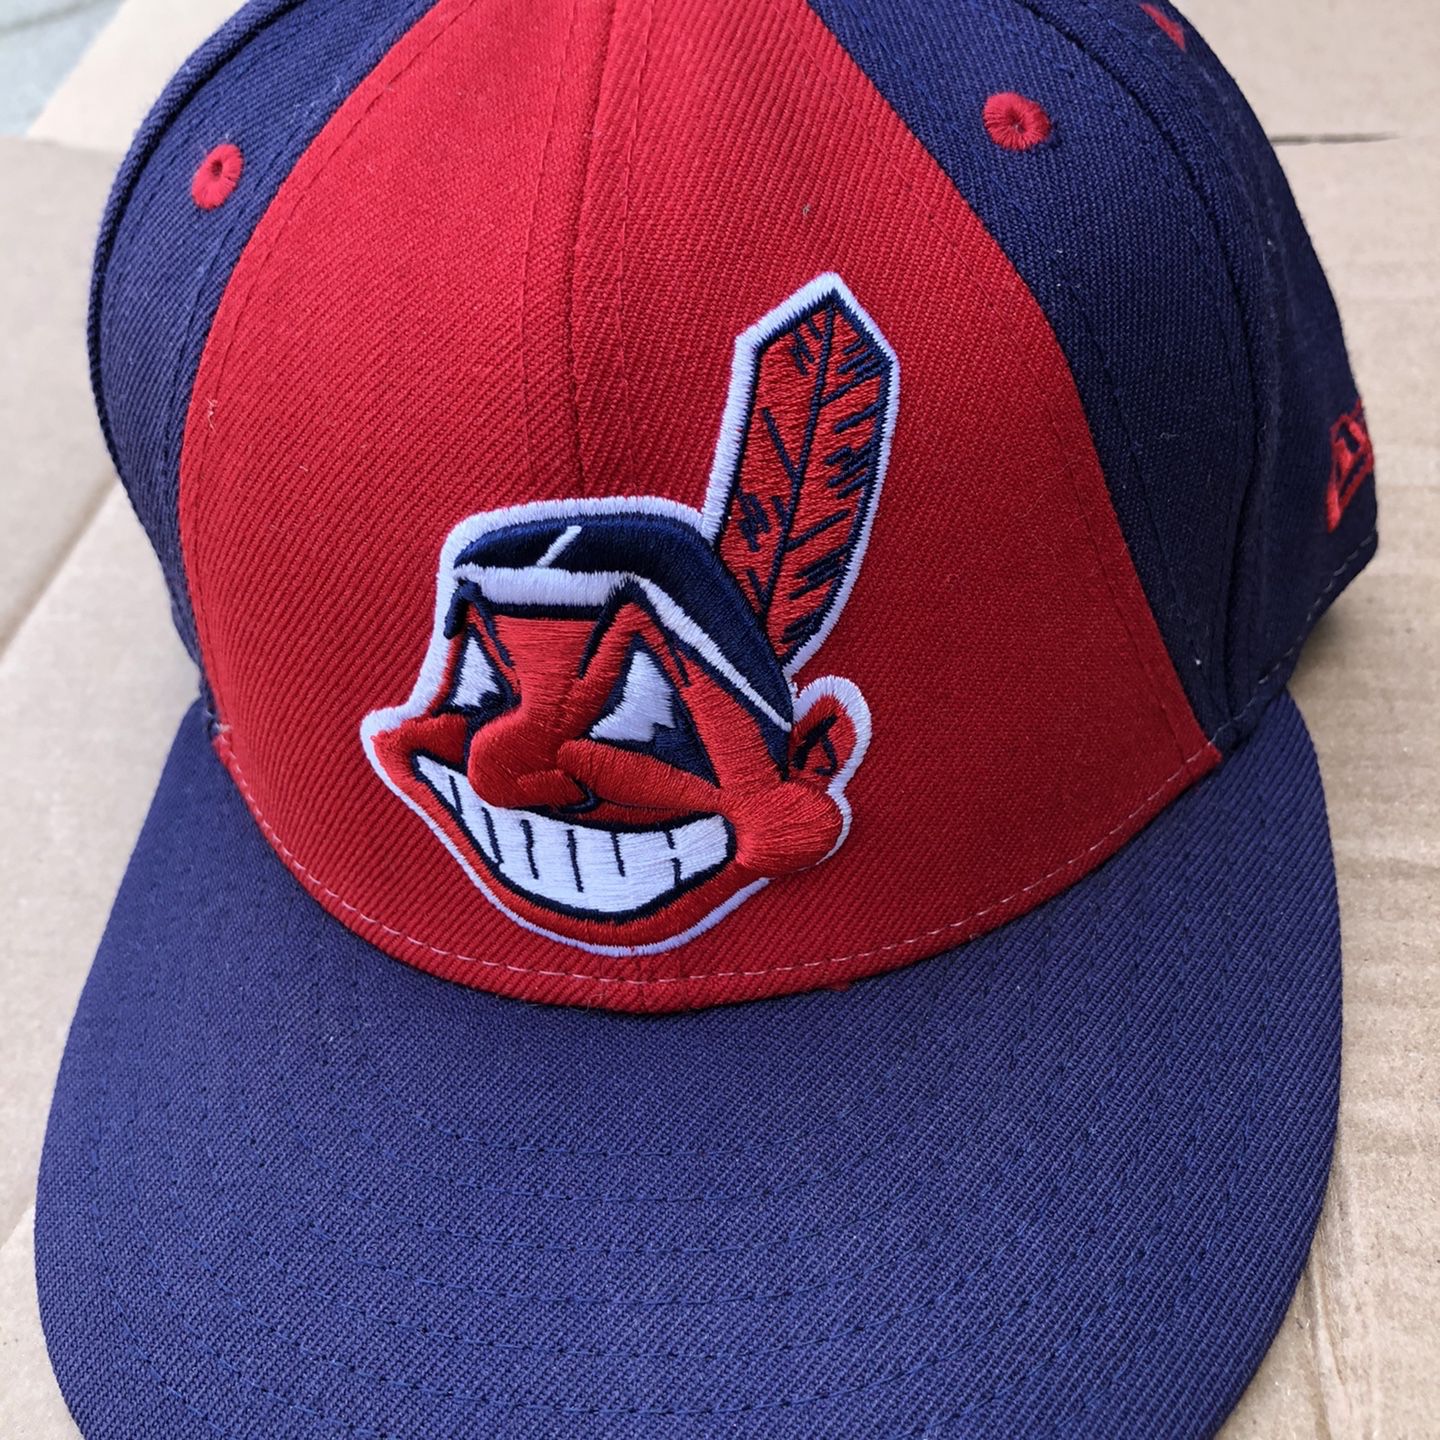 Autographed MLB Hat Cap Cleveland Indians 4 Signatures Size 6 3/4